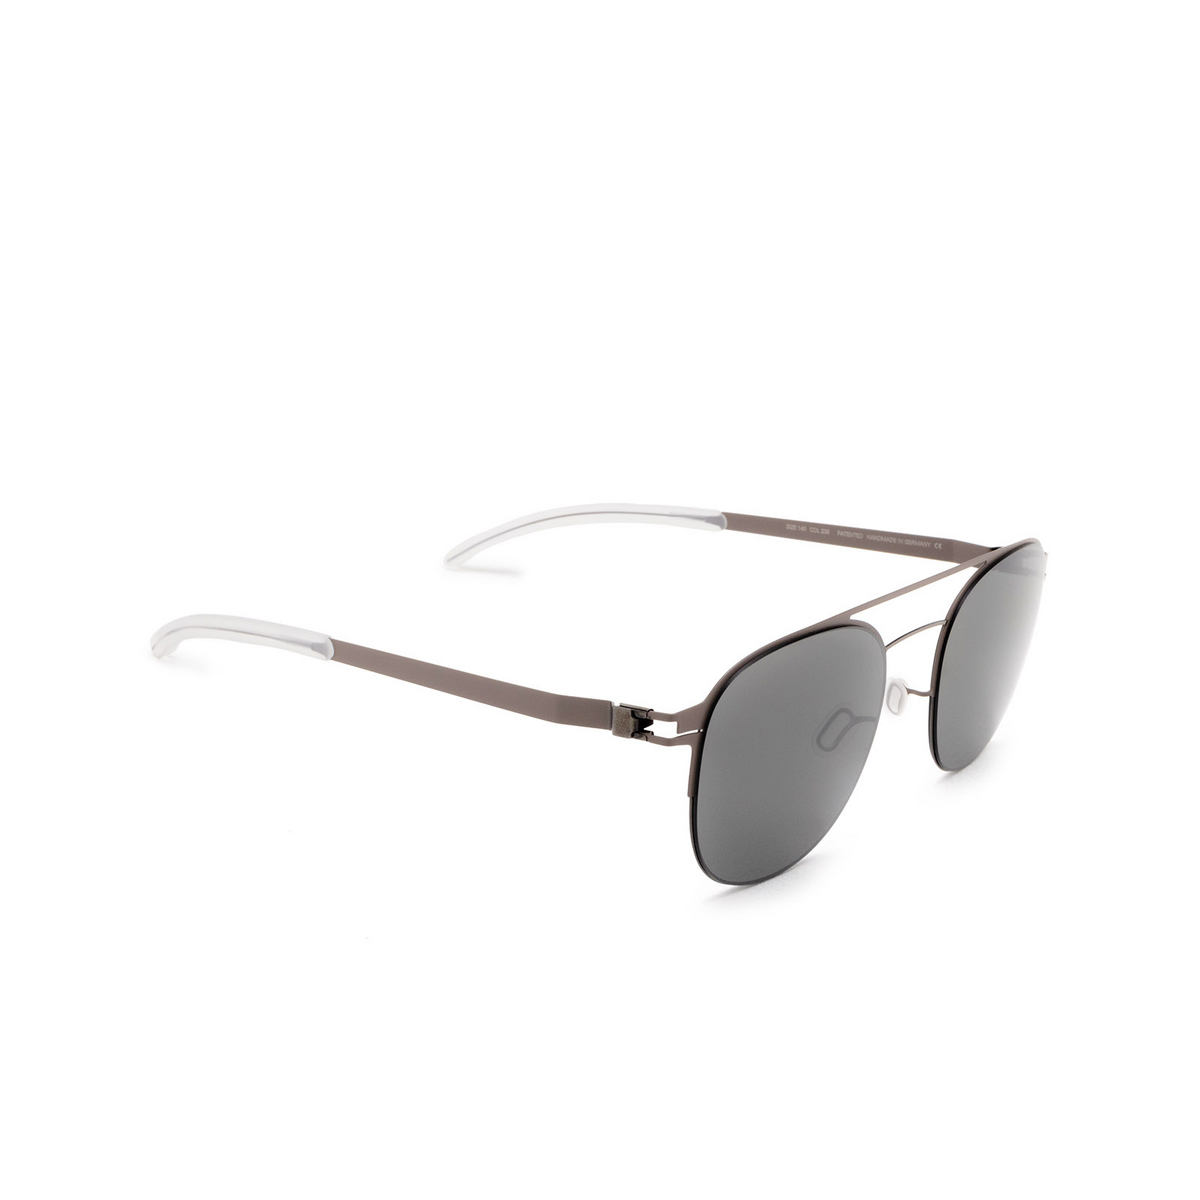 Mykita® Square Sunglasses: Park color 235 Shiny Graphite/mole Grey - three-quarters view